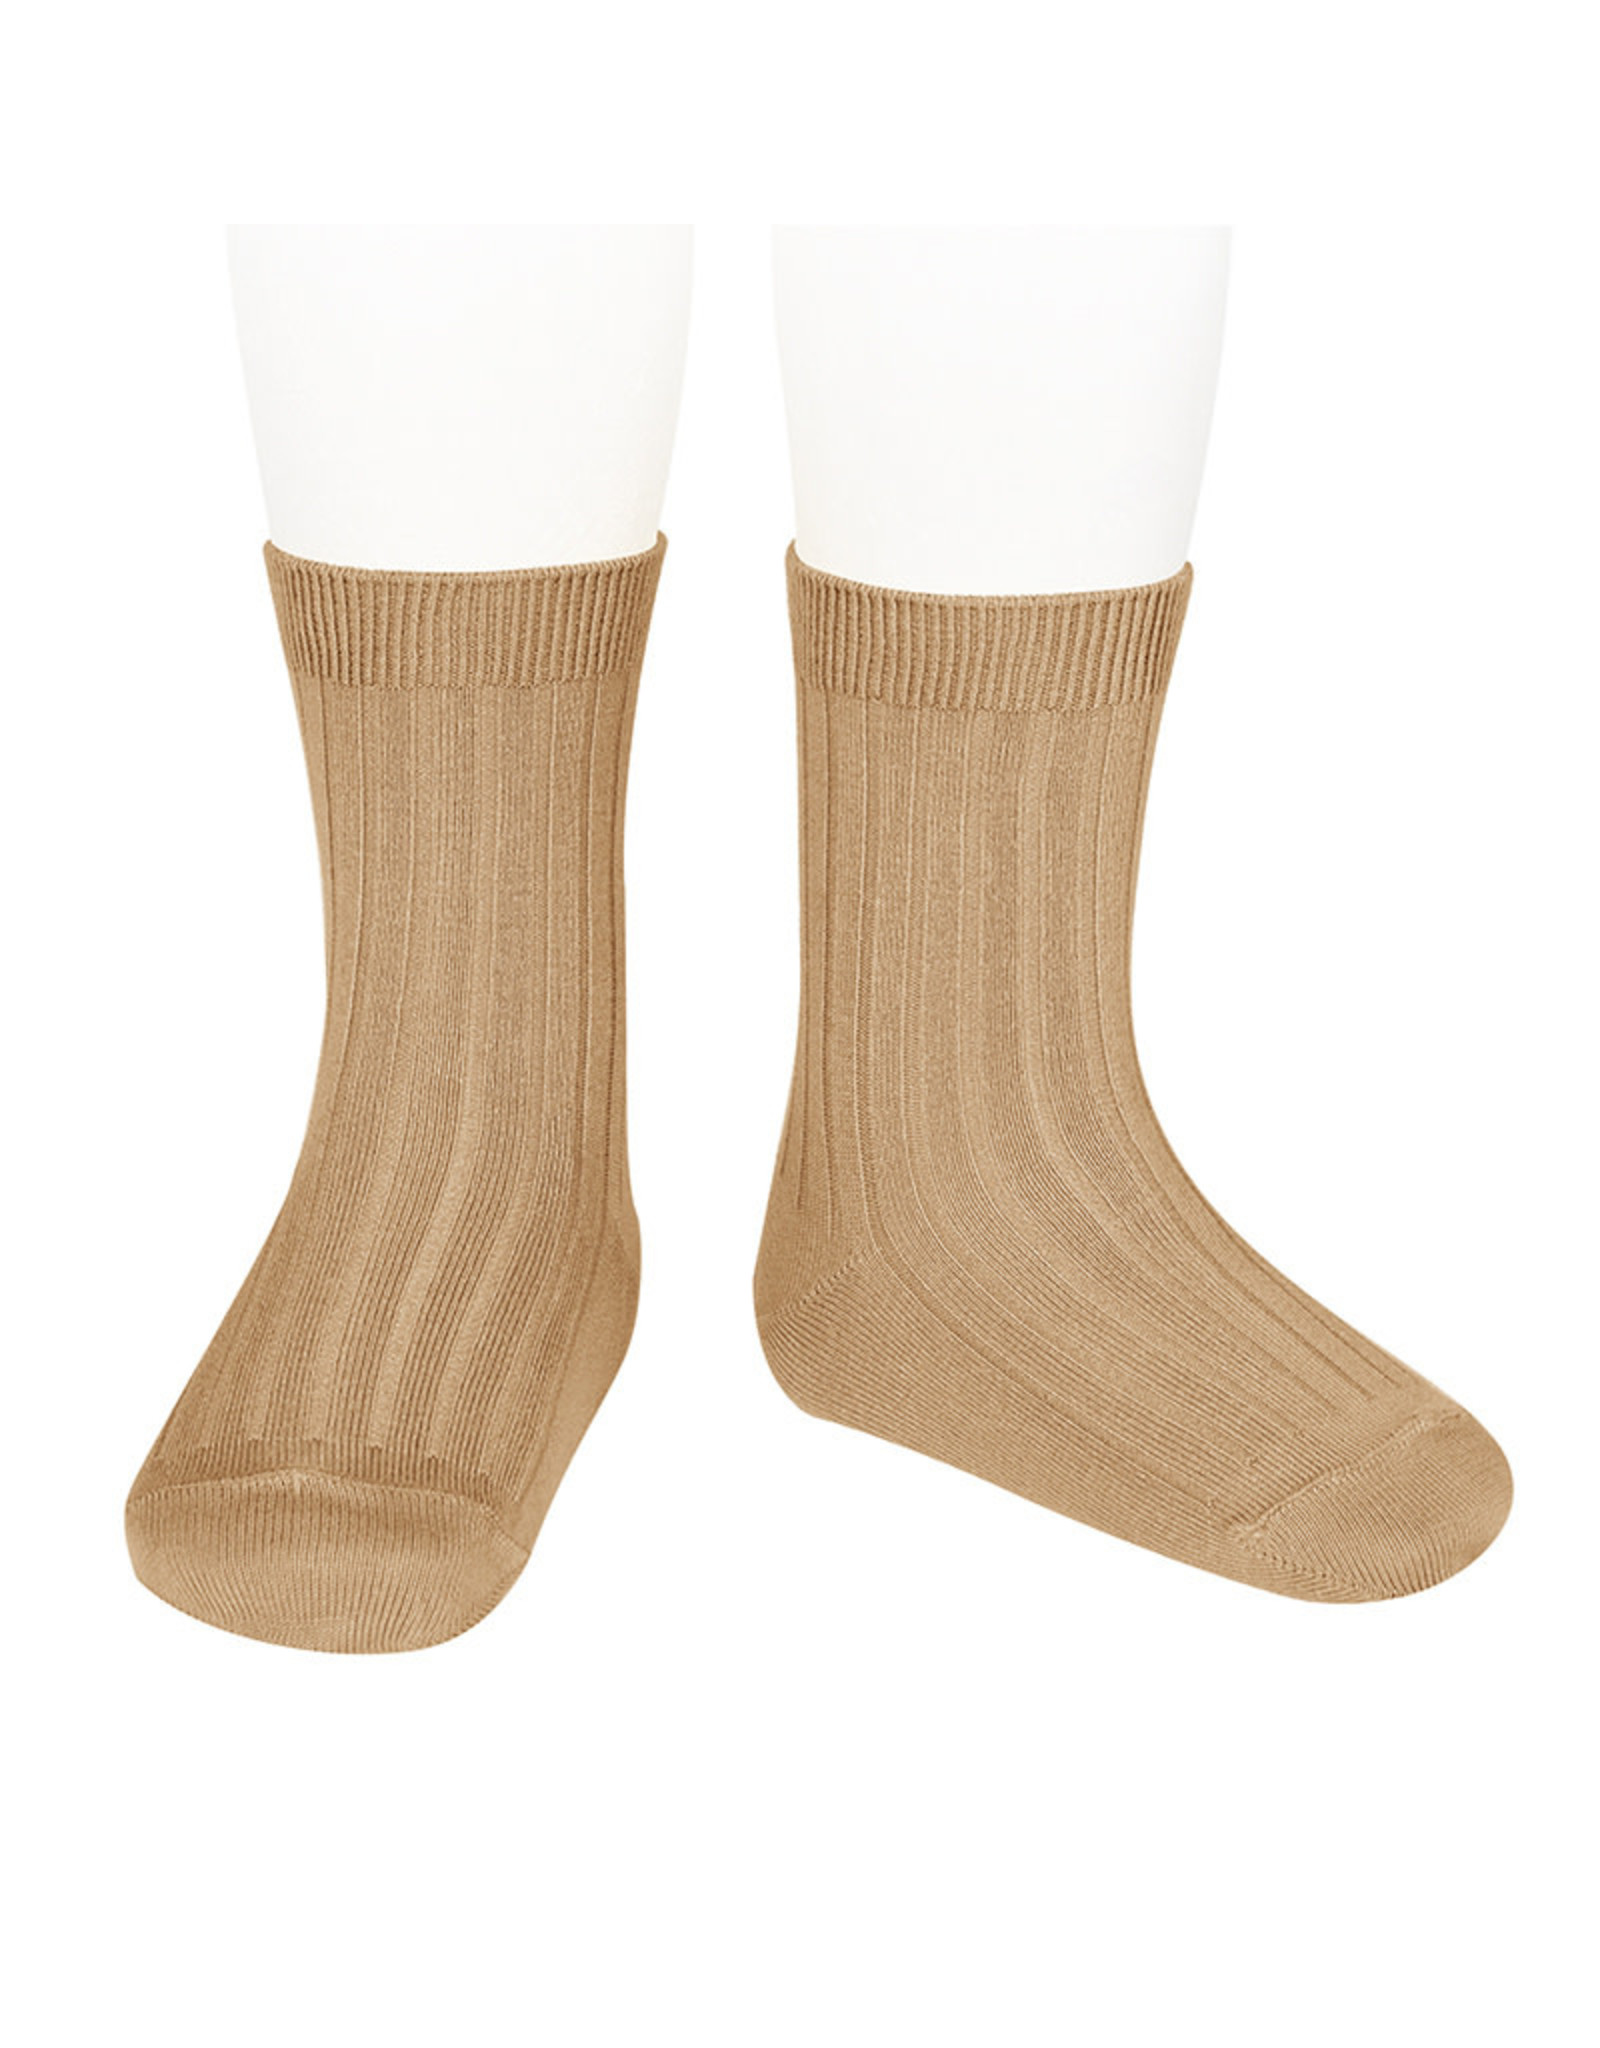 CONDOR Camel Ribbed Short Socks